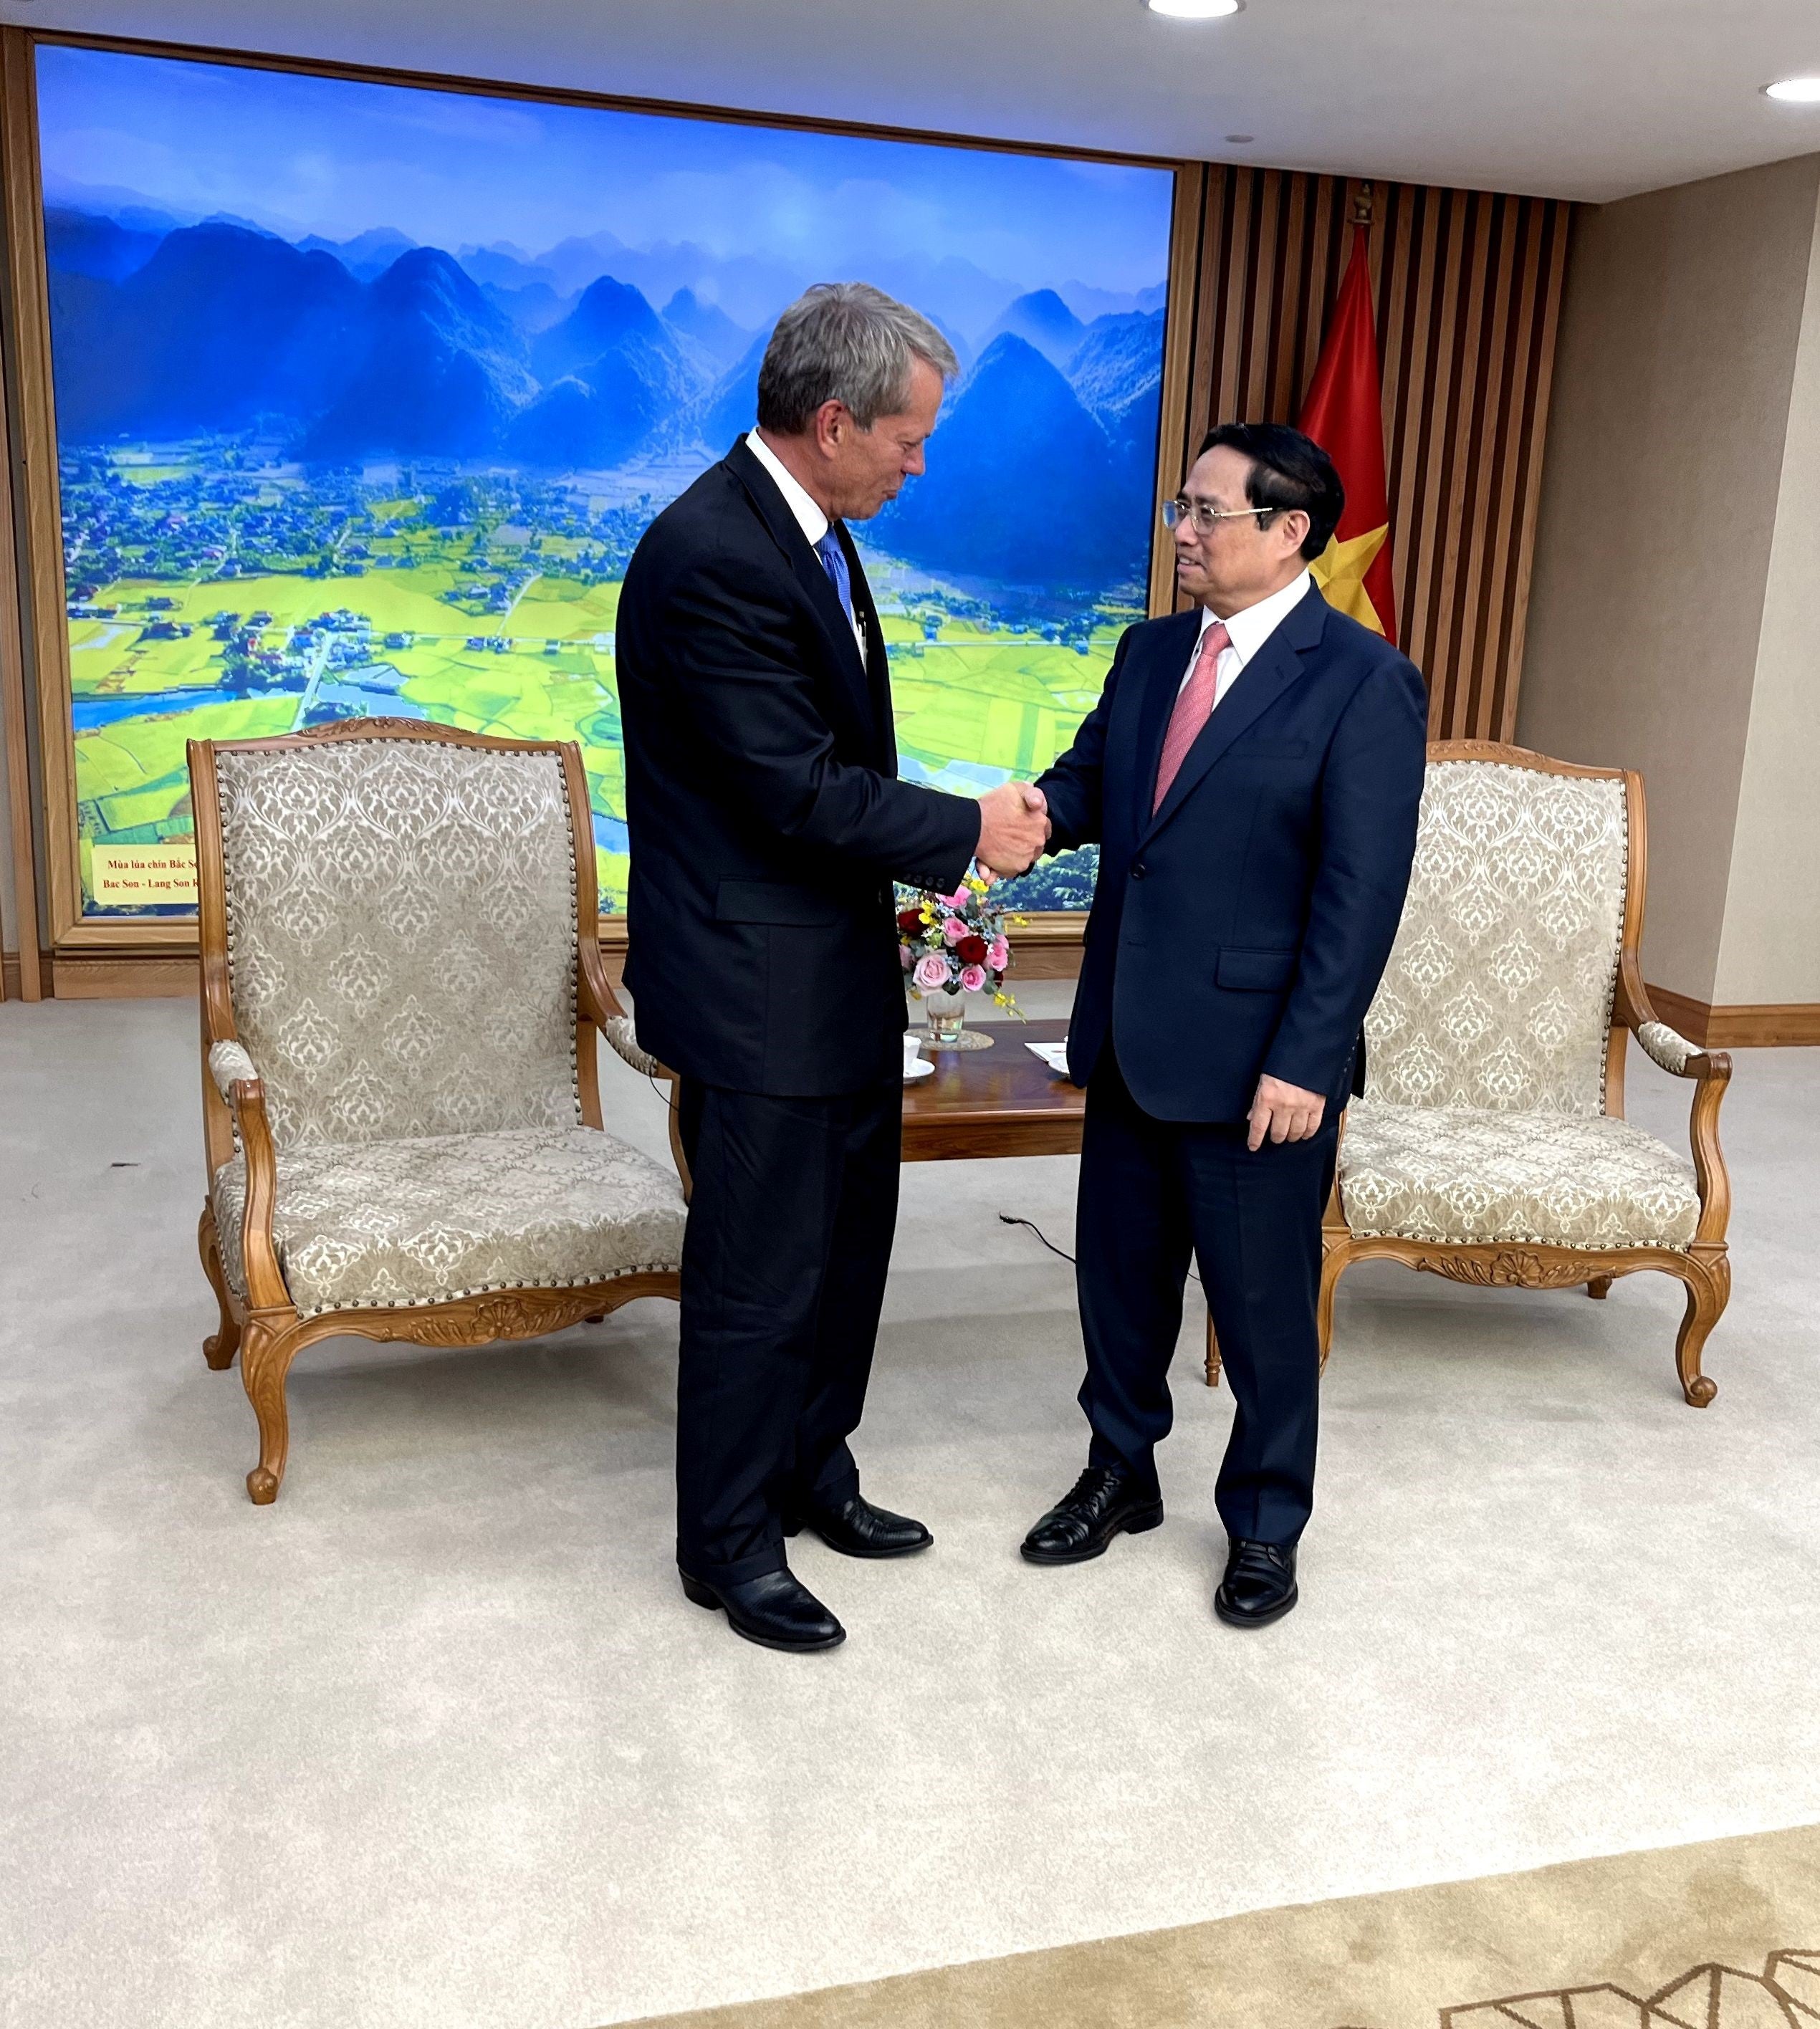 Gov. Pillen and Prime Minister Pham Minh Chinh